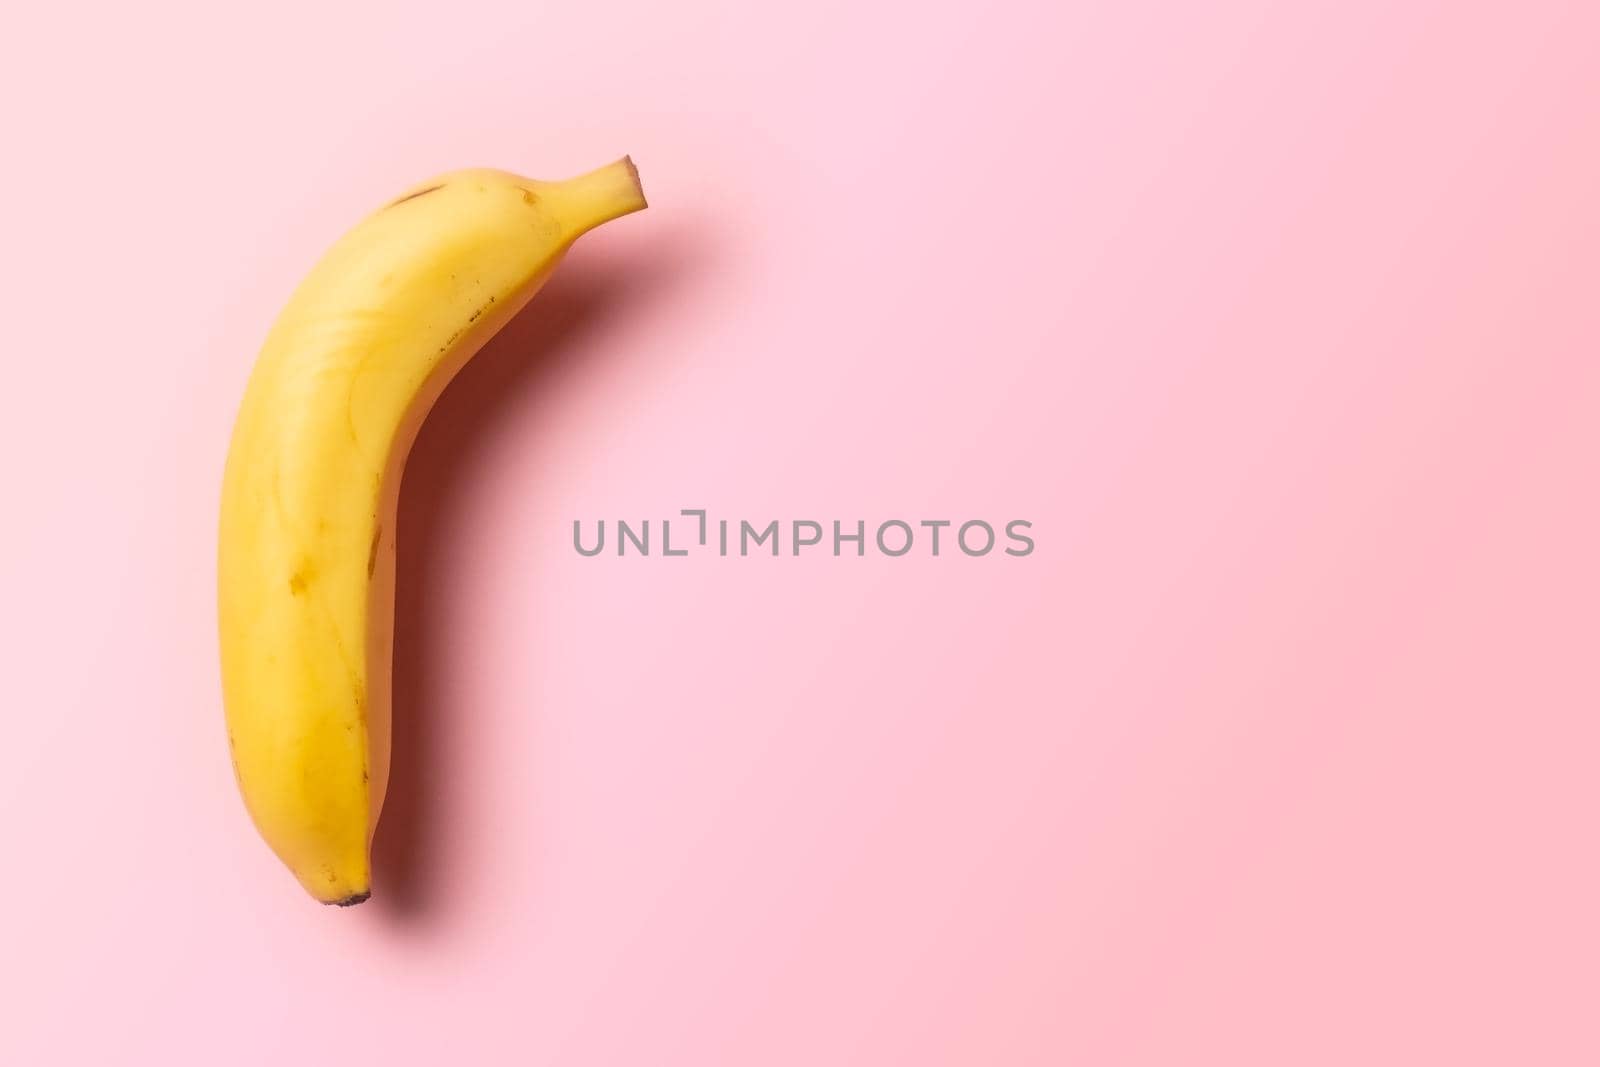 a single banana on a pink background by jatmikaV